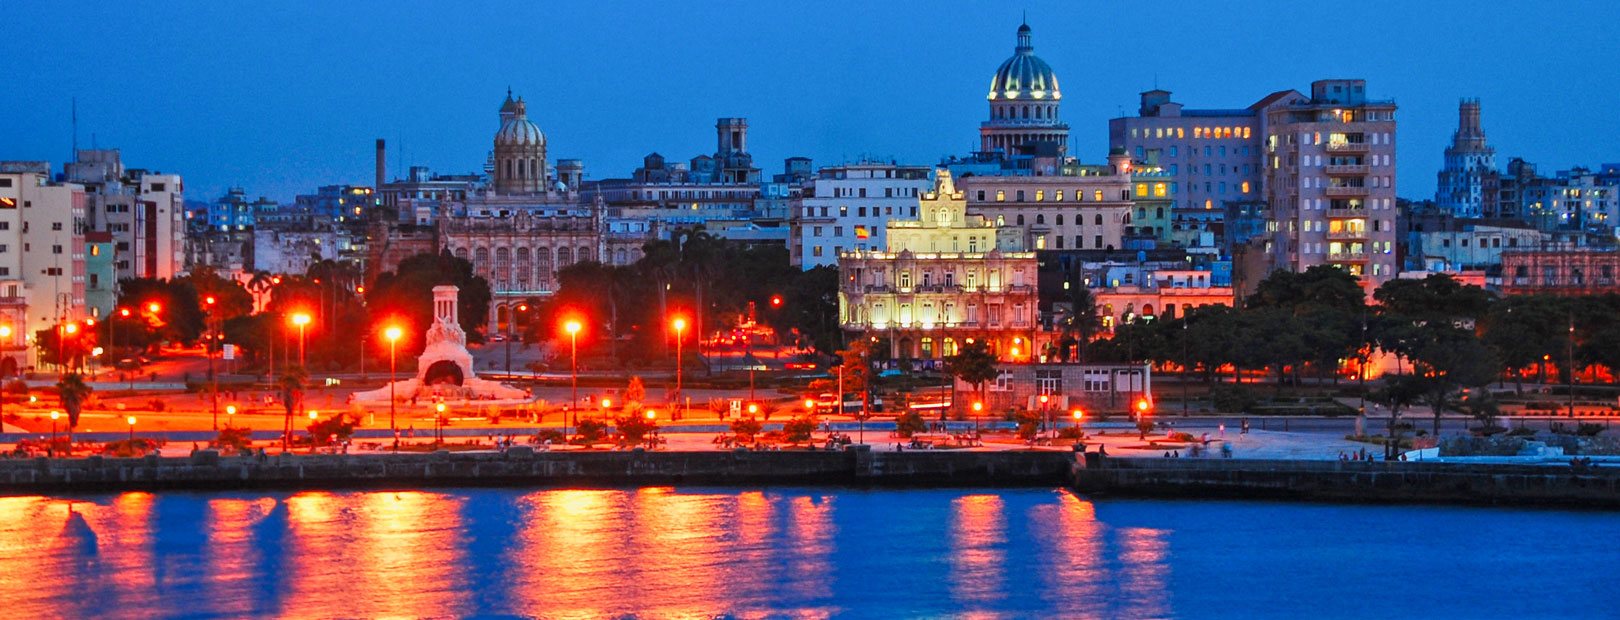 The Harbor of Havana with Old Havana, Cuba